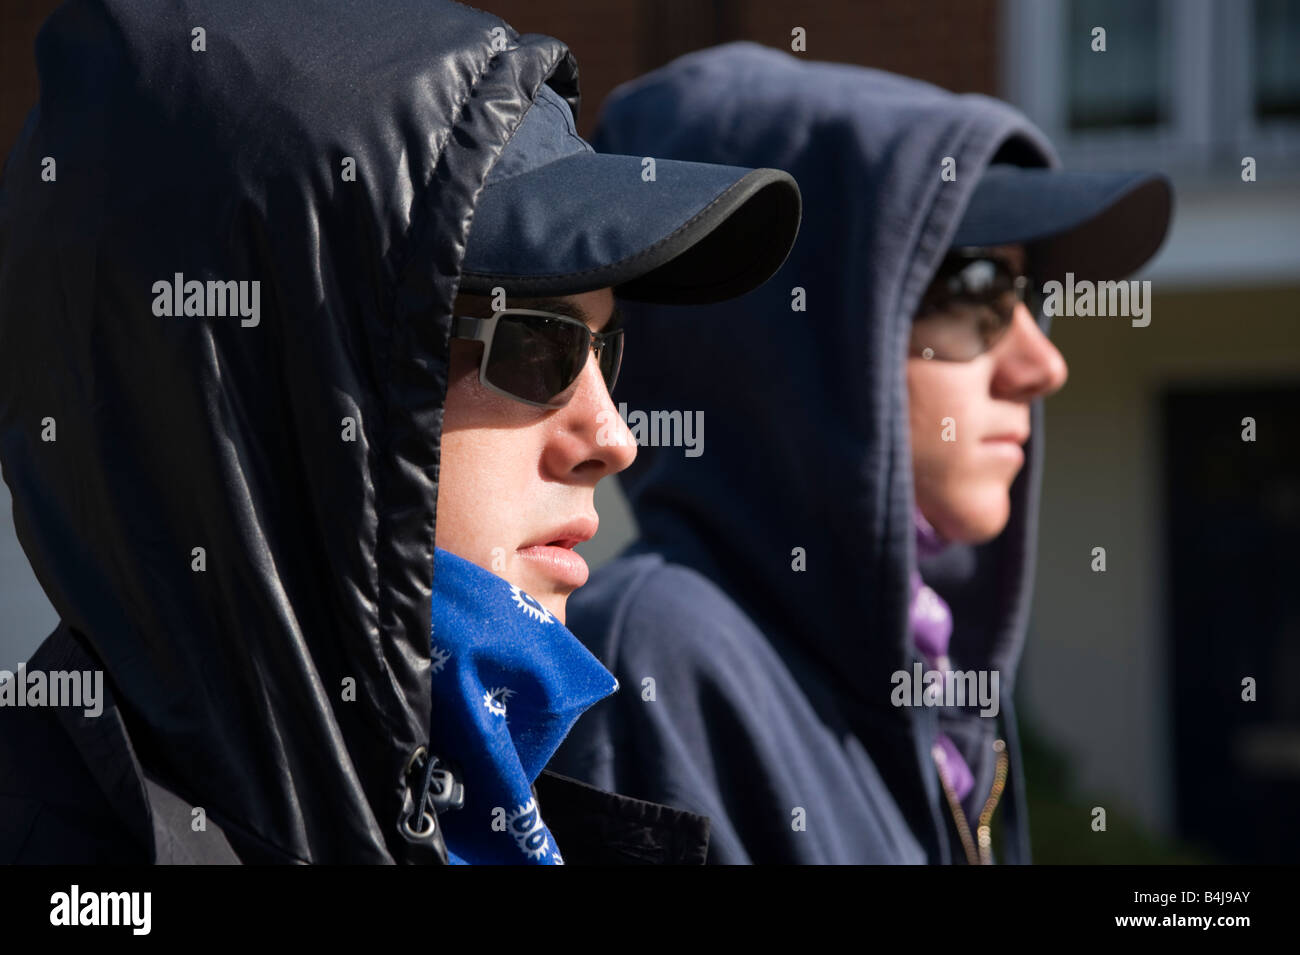 2 garçons adolescents dans sweats à capuche et des lunettes noires Banque D'Images